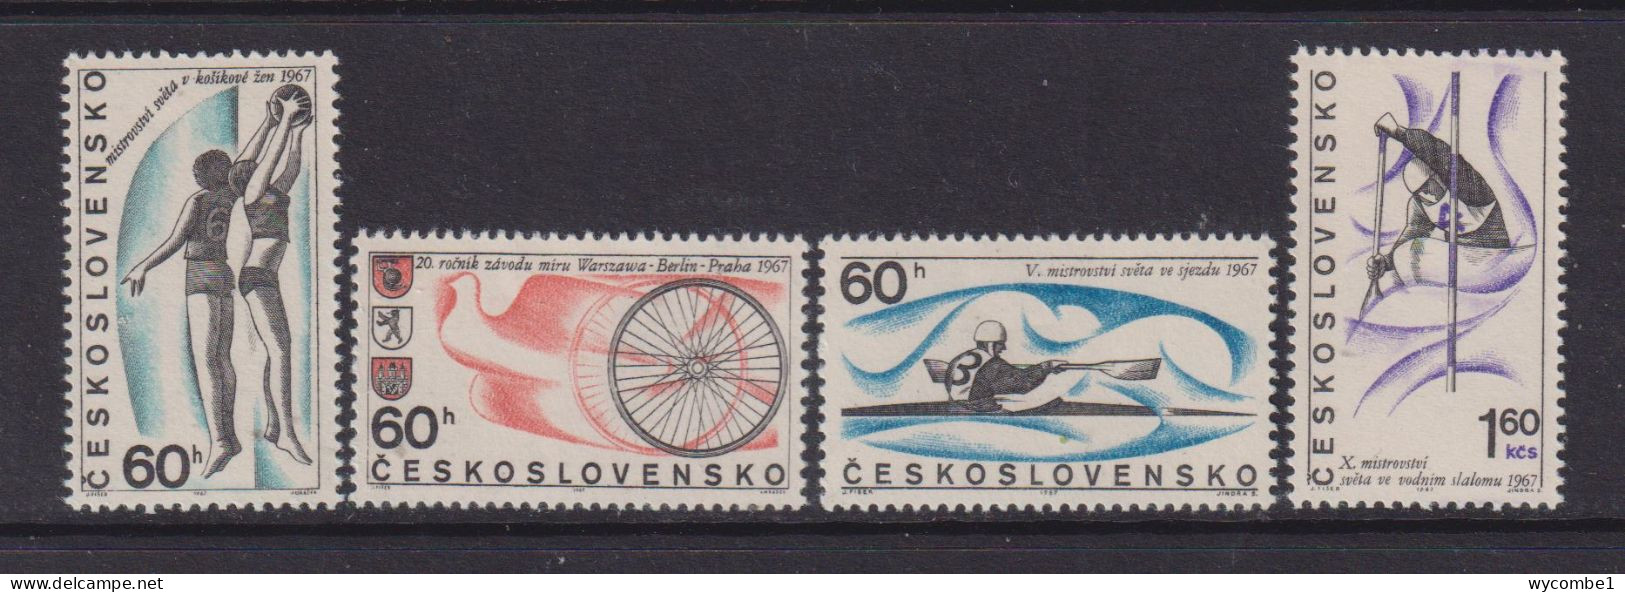 CZECHOSLOVAKIA  - 1967 Sports Events Set Never Hinged Mint - Neufs